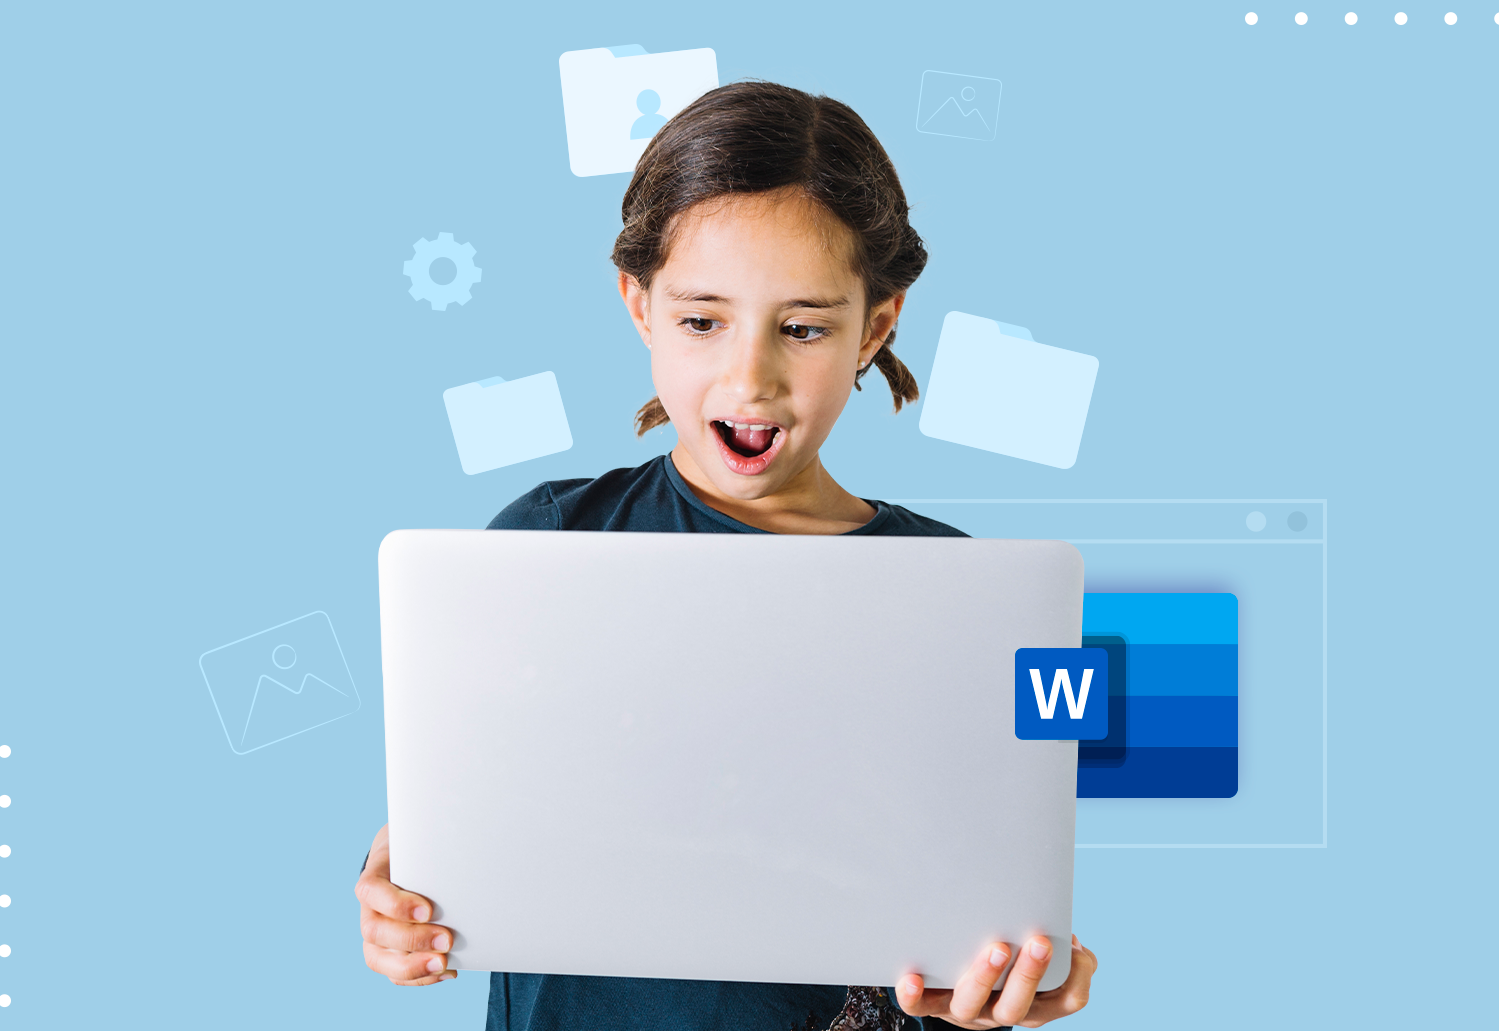 Mejora tus habilidades con el curso de Microsoft Word 2013